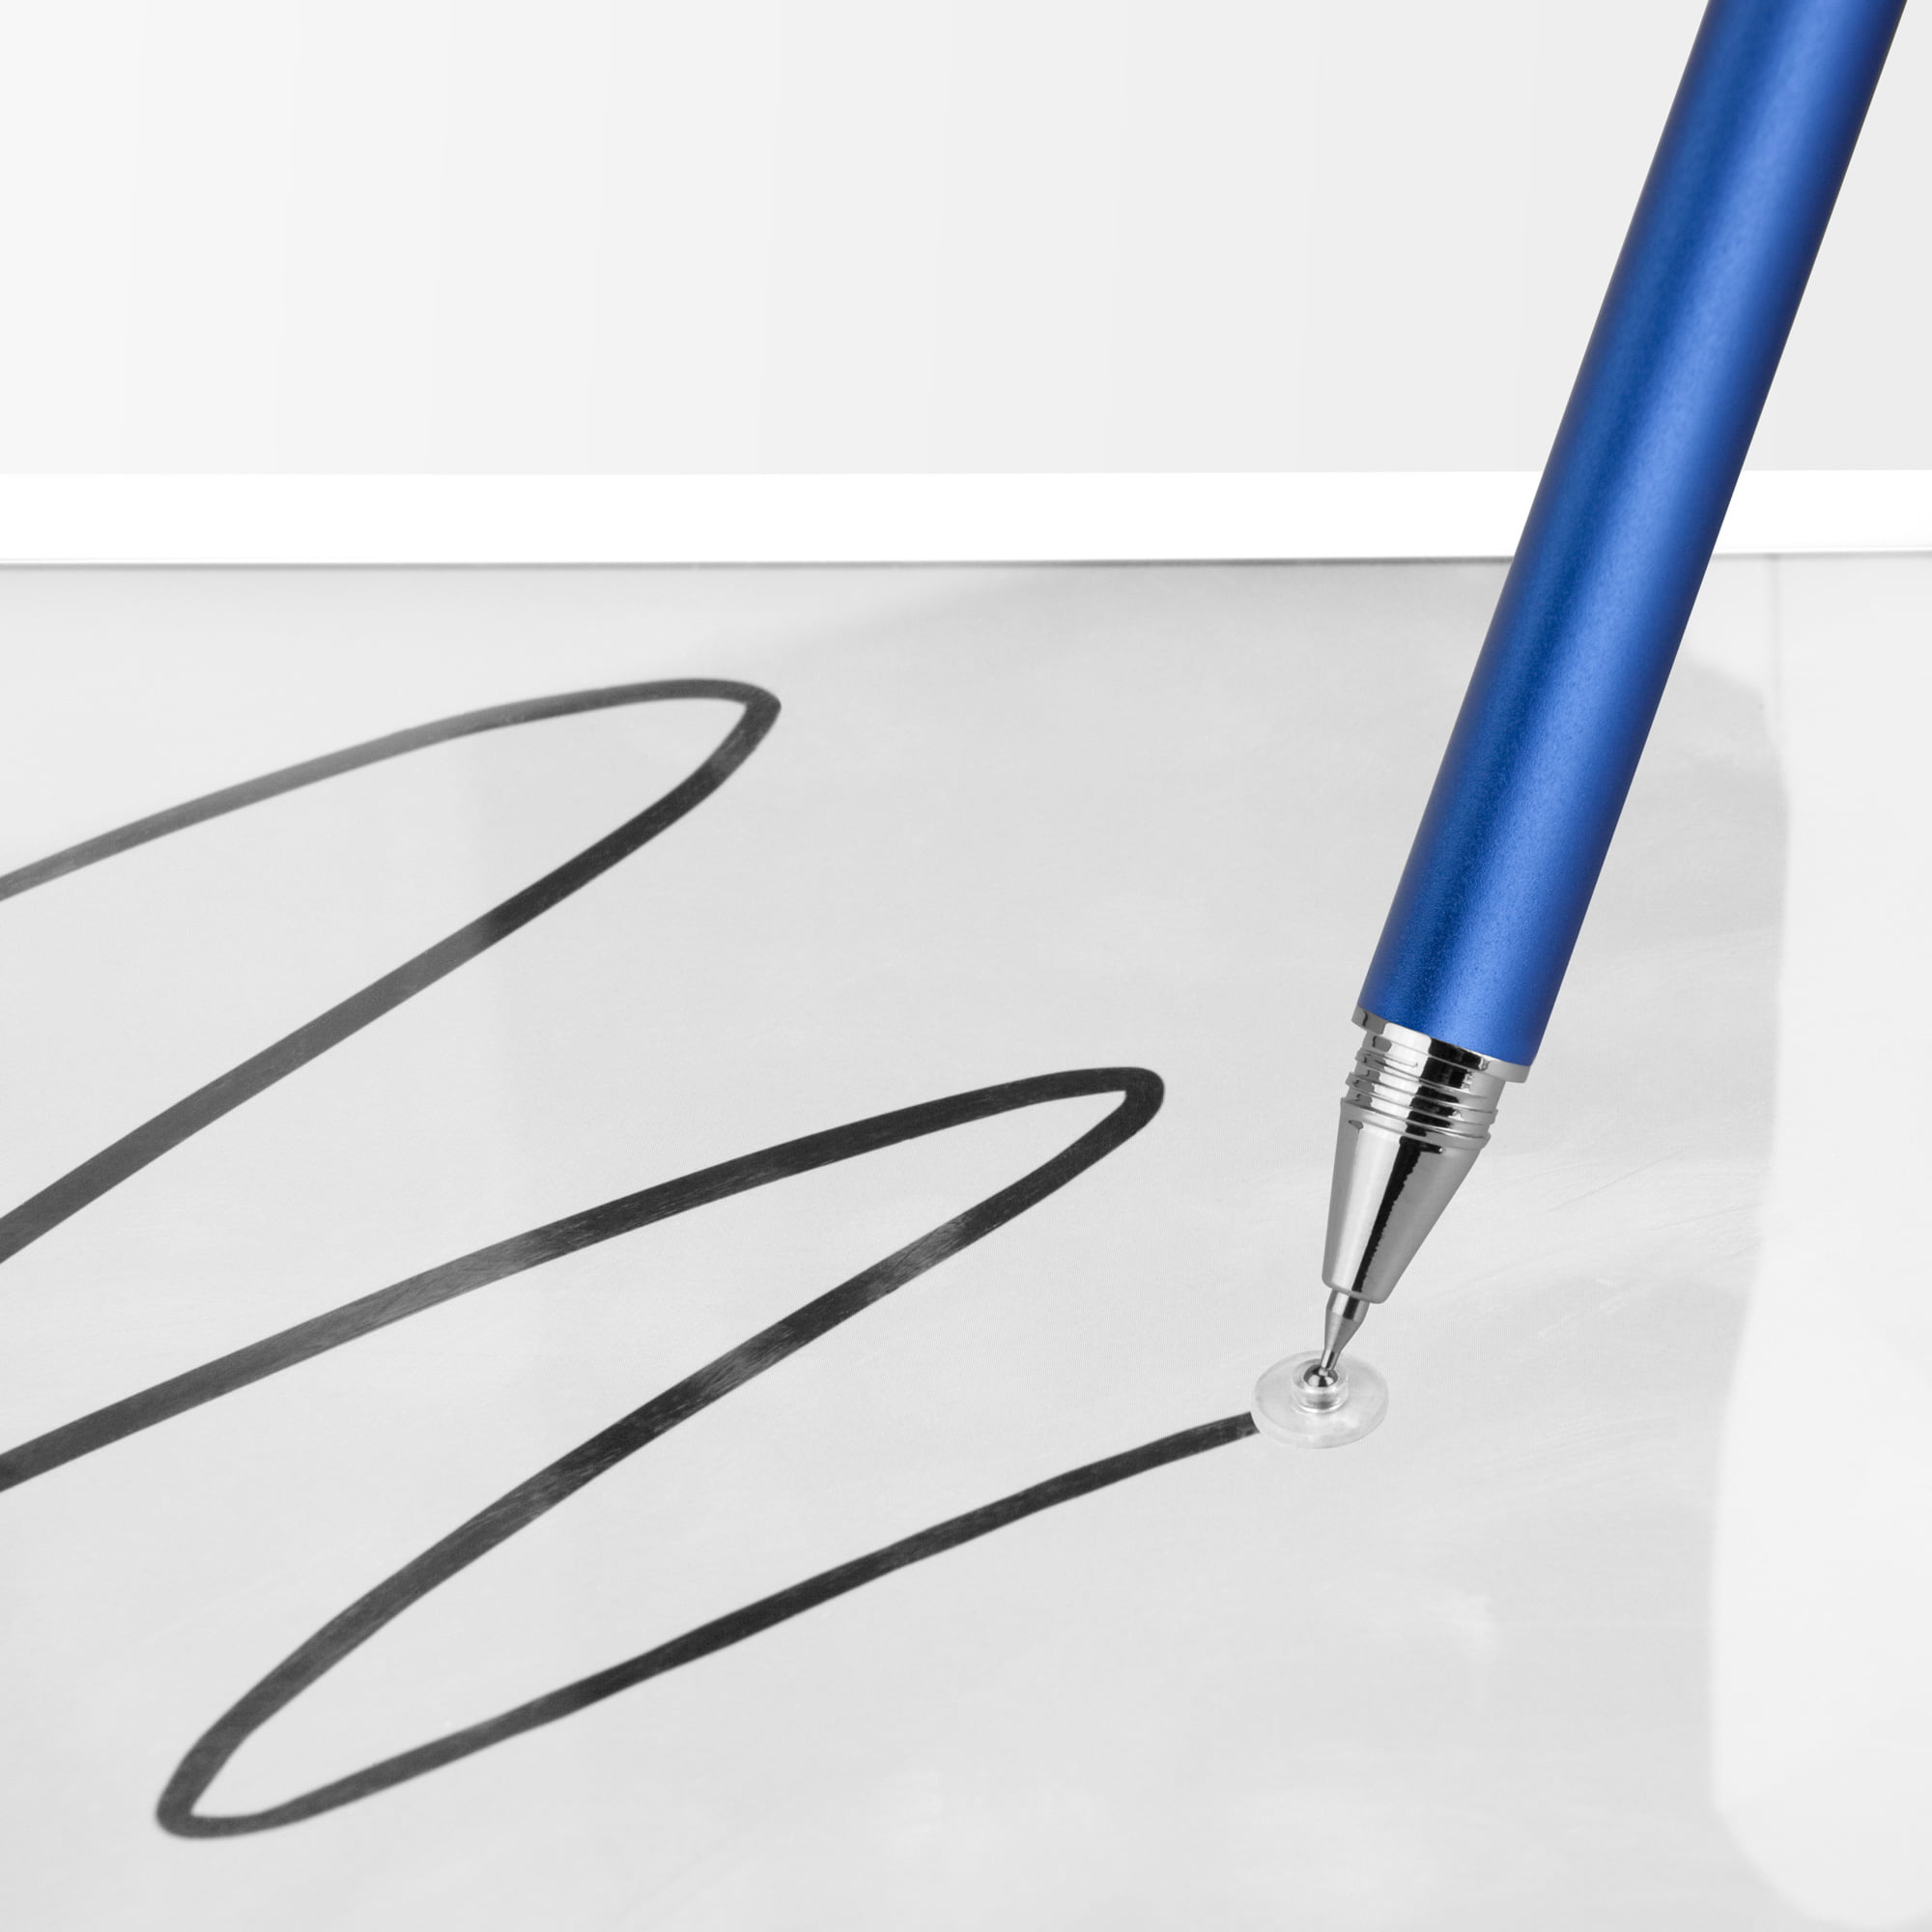 Stylus Pen for LG K51 - FineTouch Capacitive Stylus Stylus Pen by BoxWave Super Precise Stylus Pen for LG K51 Jet Black